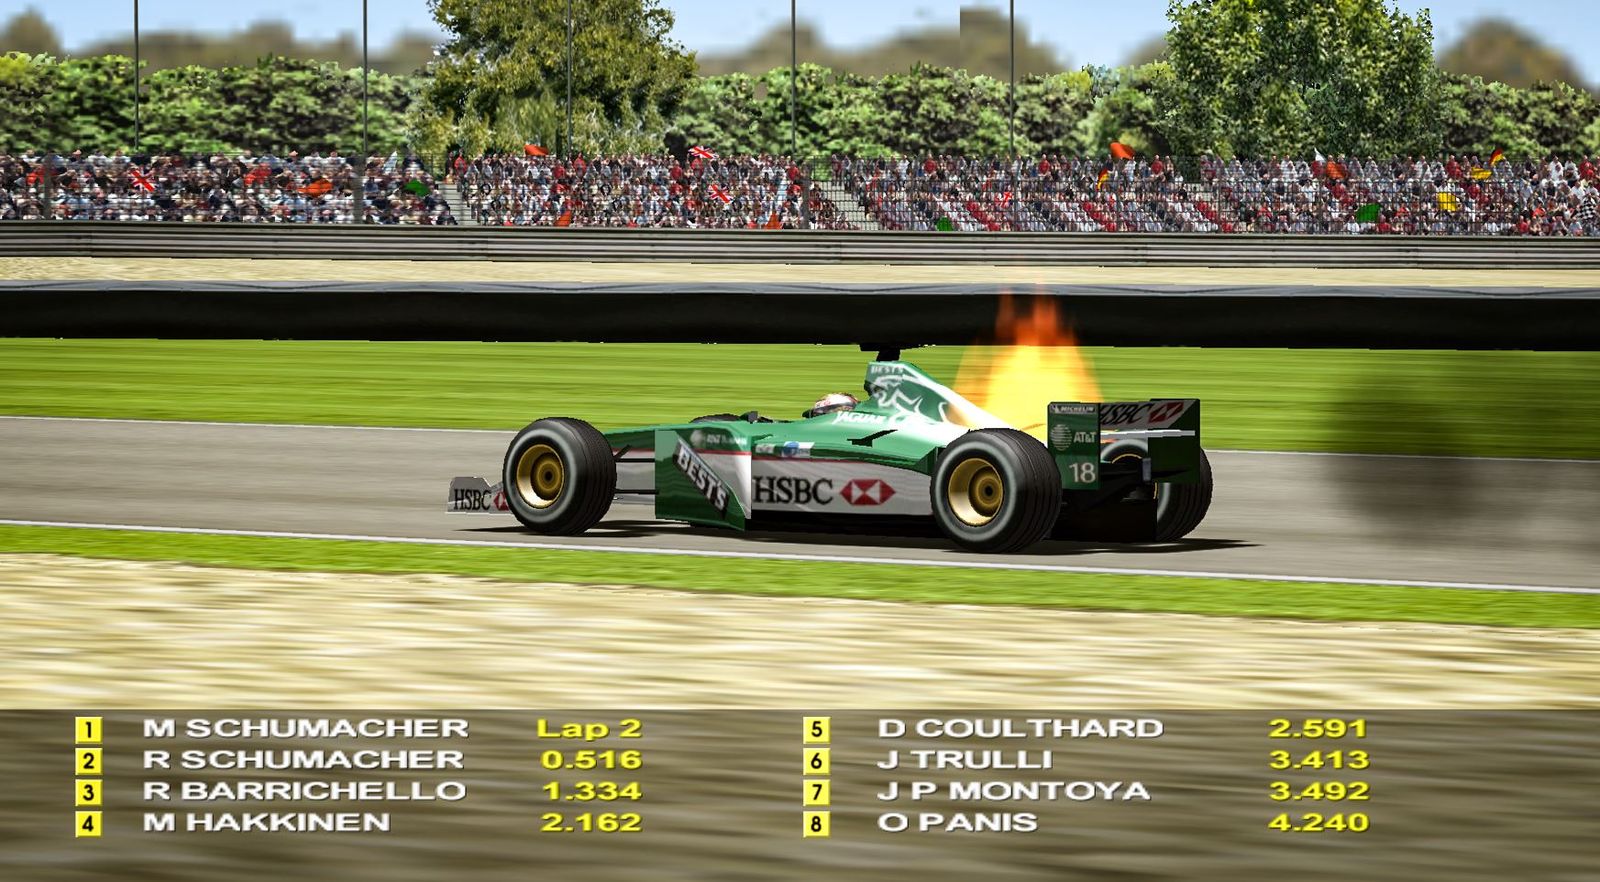 A Jaguar F1 car on fire in the game Grand Prix 4